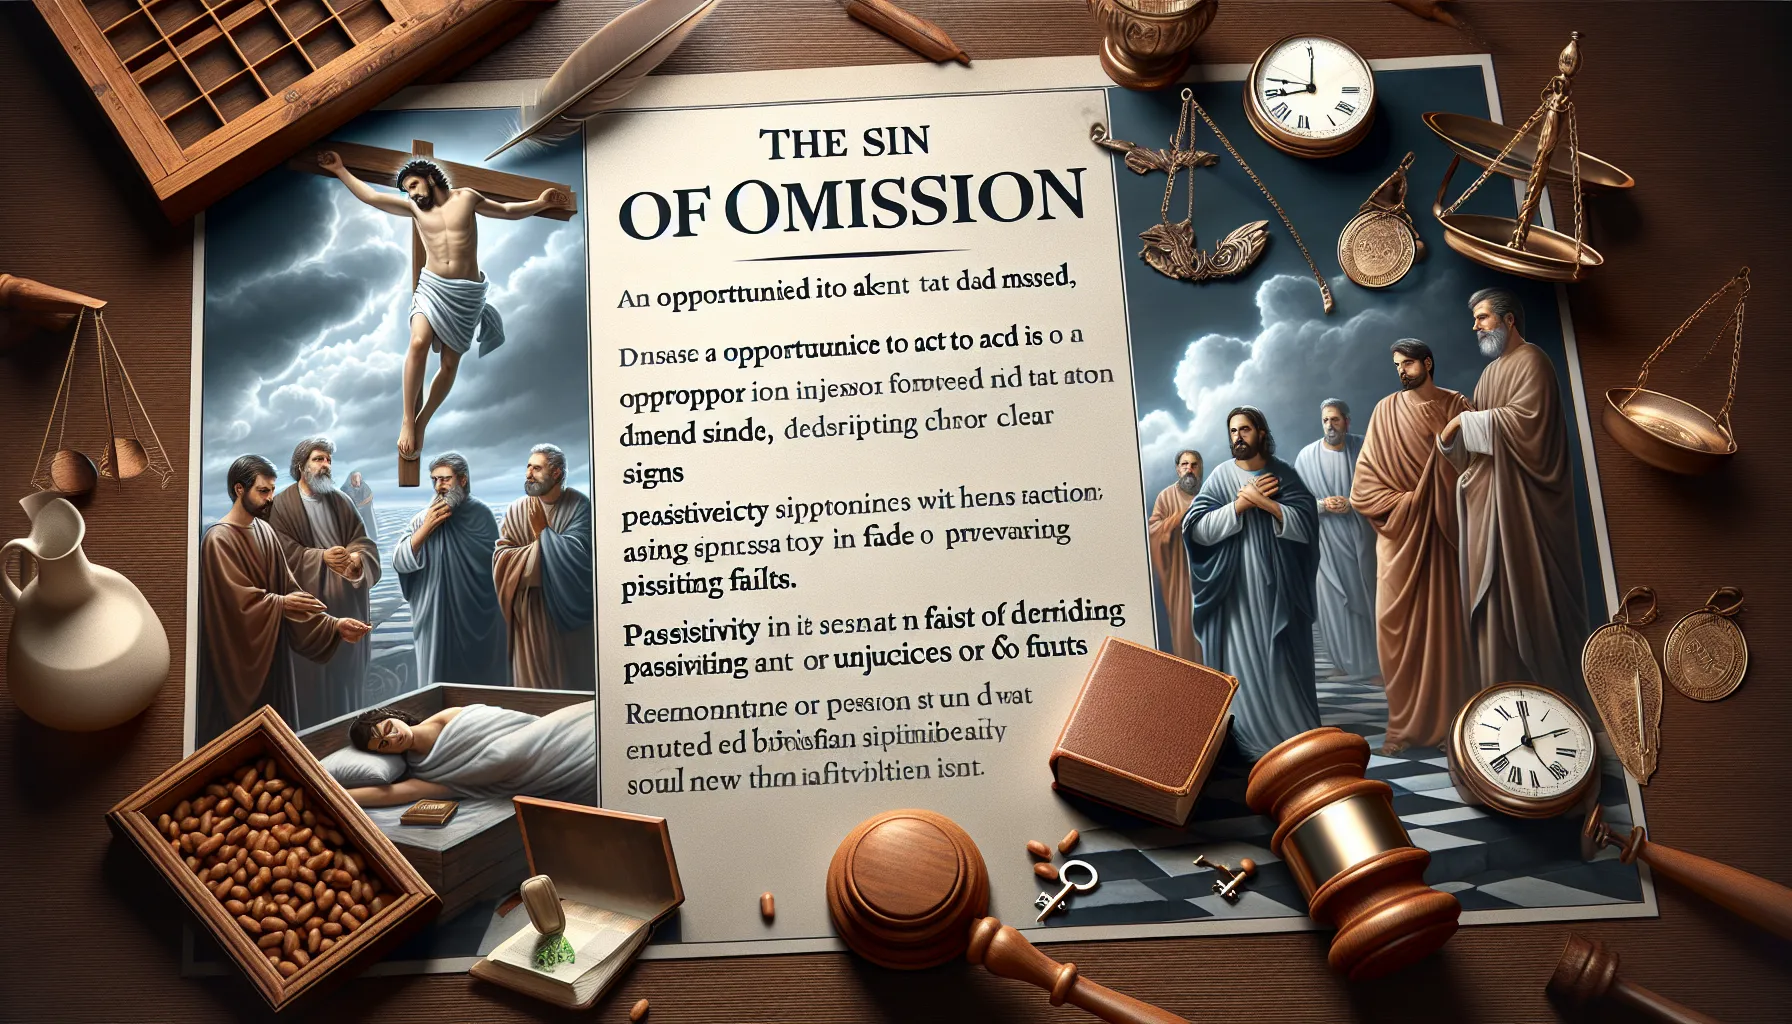 Imagen representando conceptos bíblicos relacionados con el pecado de omisión.